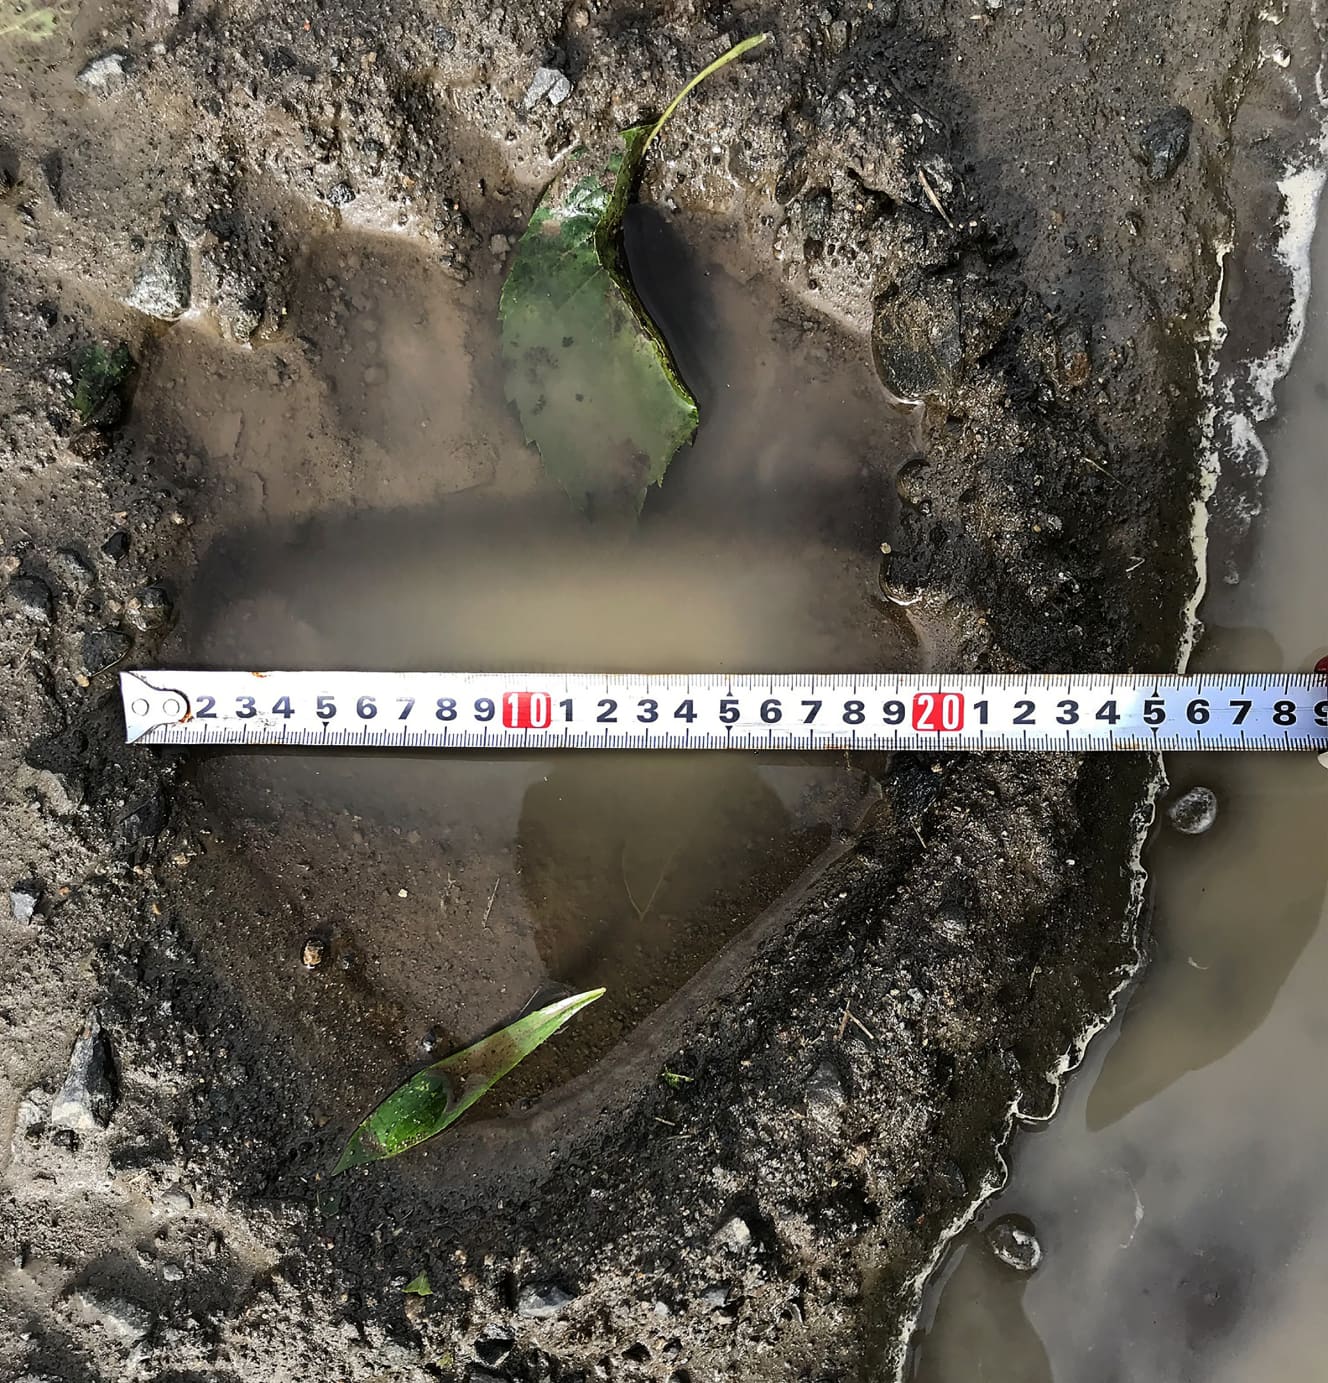 ’20年に標茶町で発見されたＯＳＯ18と見られるヒグマの足跡。捕獲時のＯＳＯ18の足幅は20㎝だった